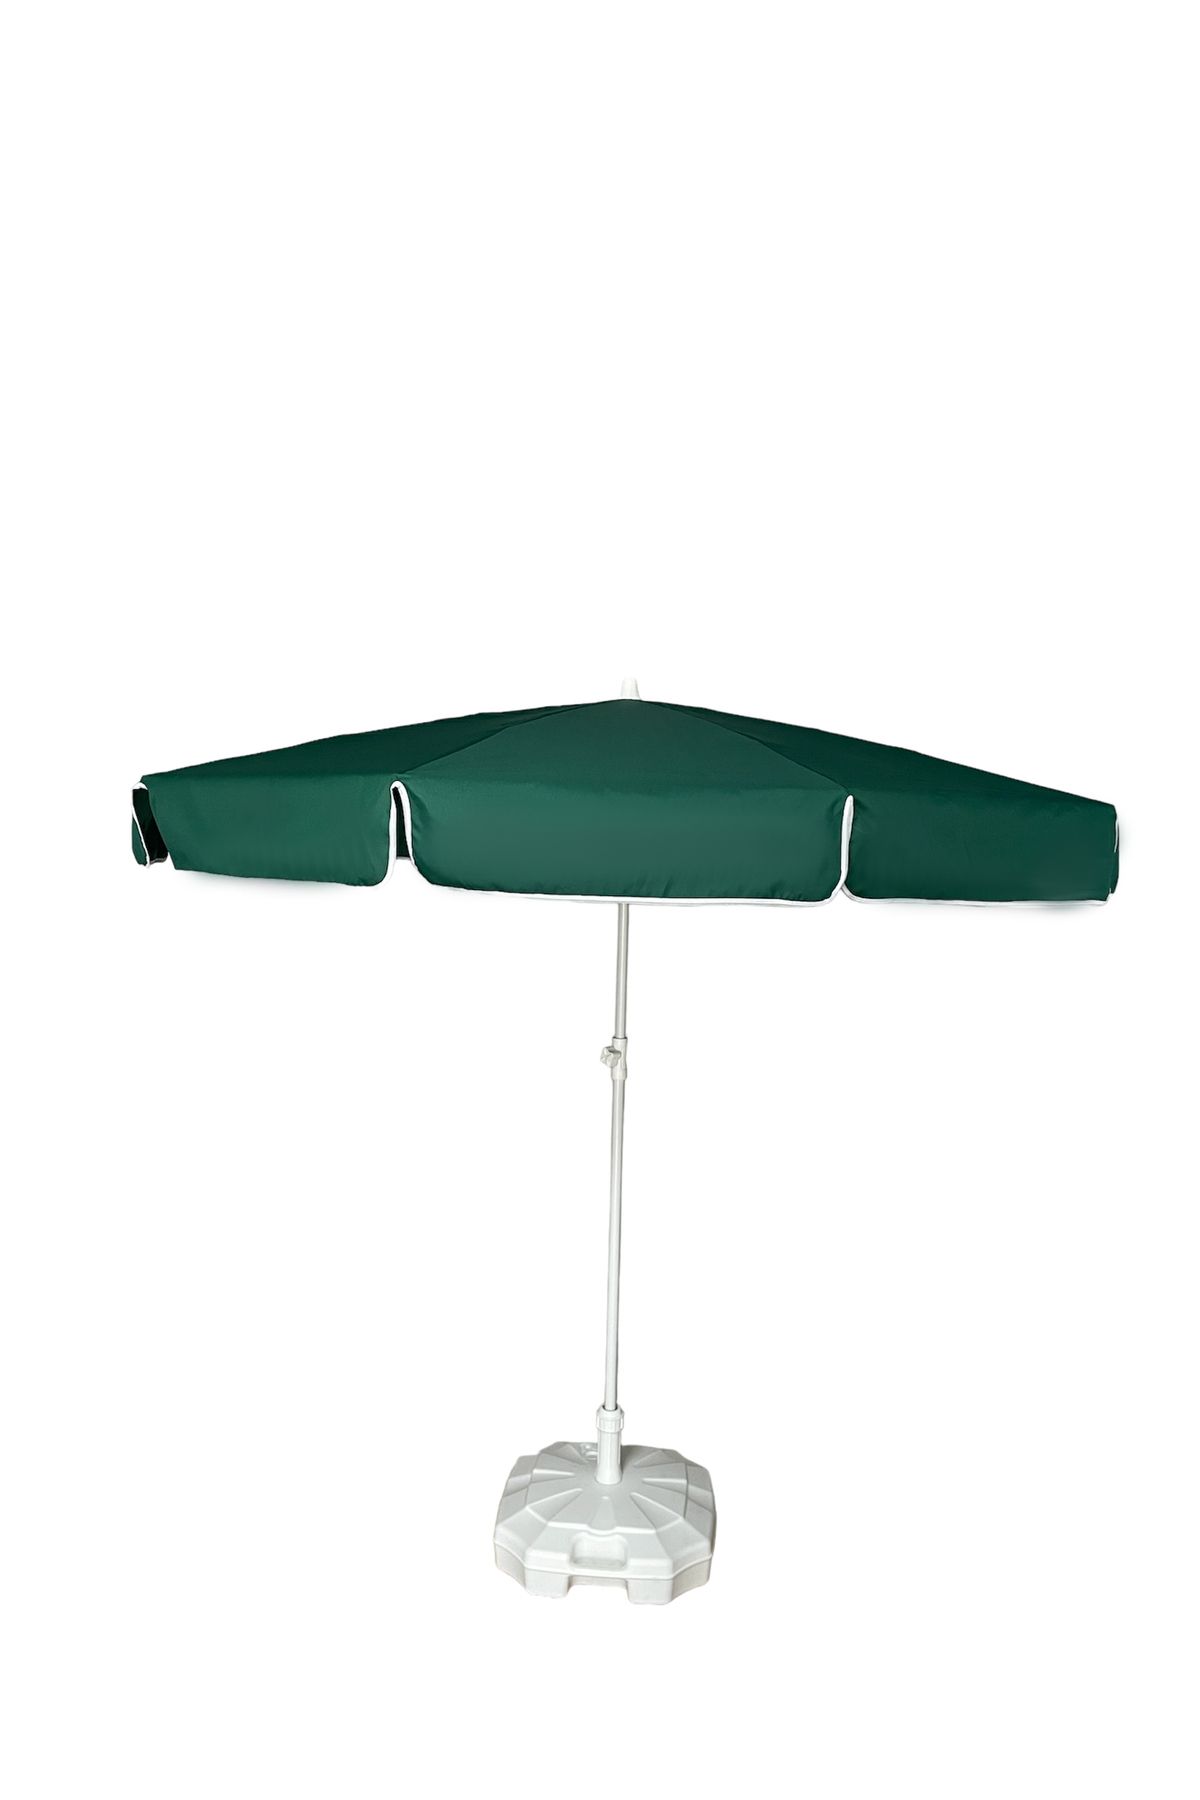 MEGA ŞEMSİYE Kalın Polyester Havuz, Balkon, Bahçe Plaj Şemsiyesi 200 Cm Çapında 10 Telli Çantalı (BİDON HARİÇ)